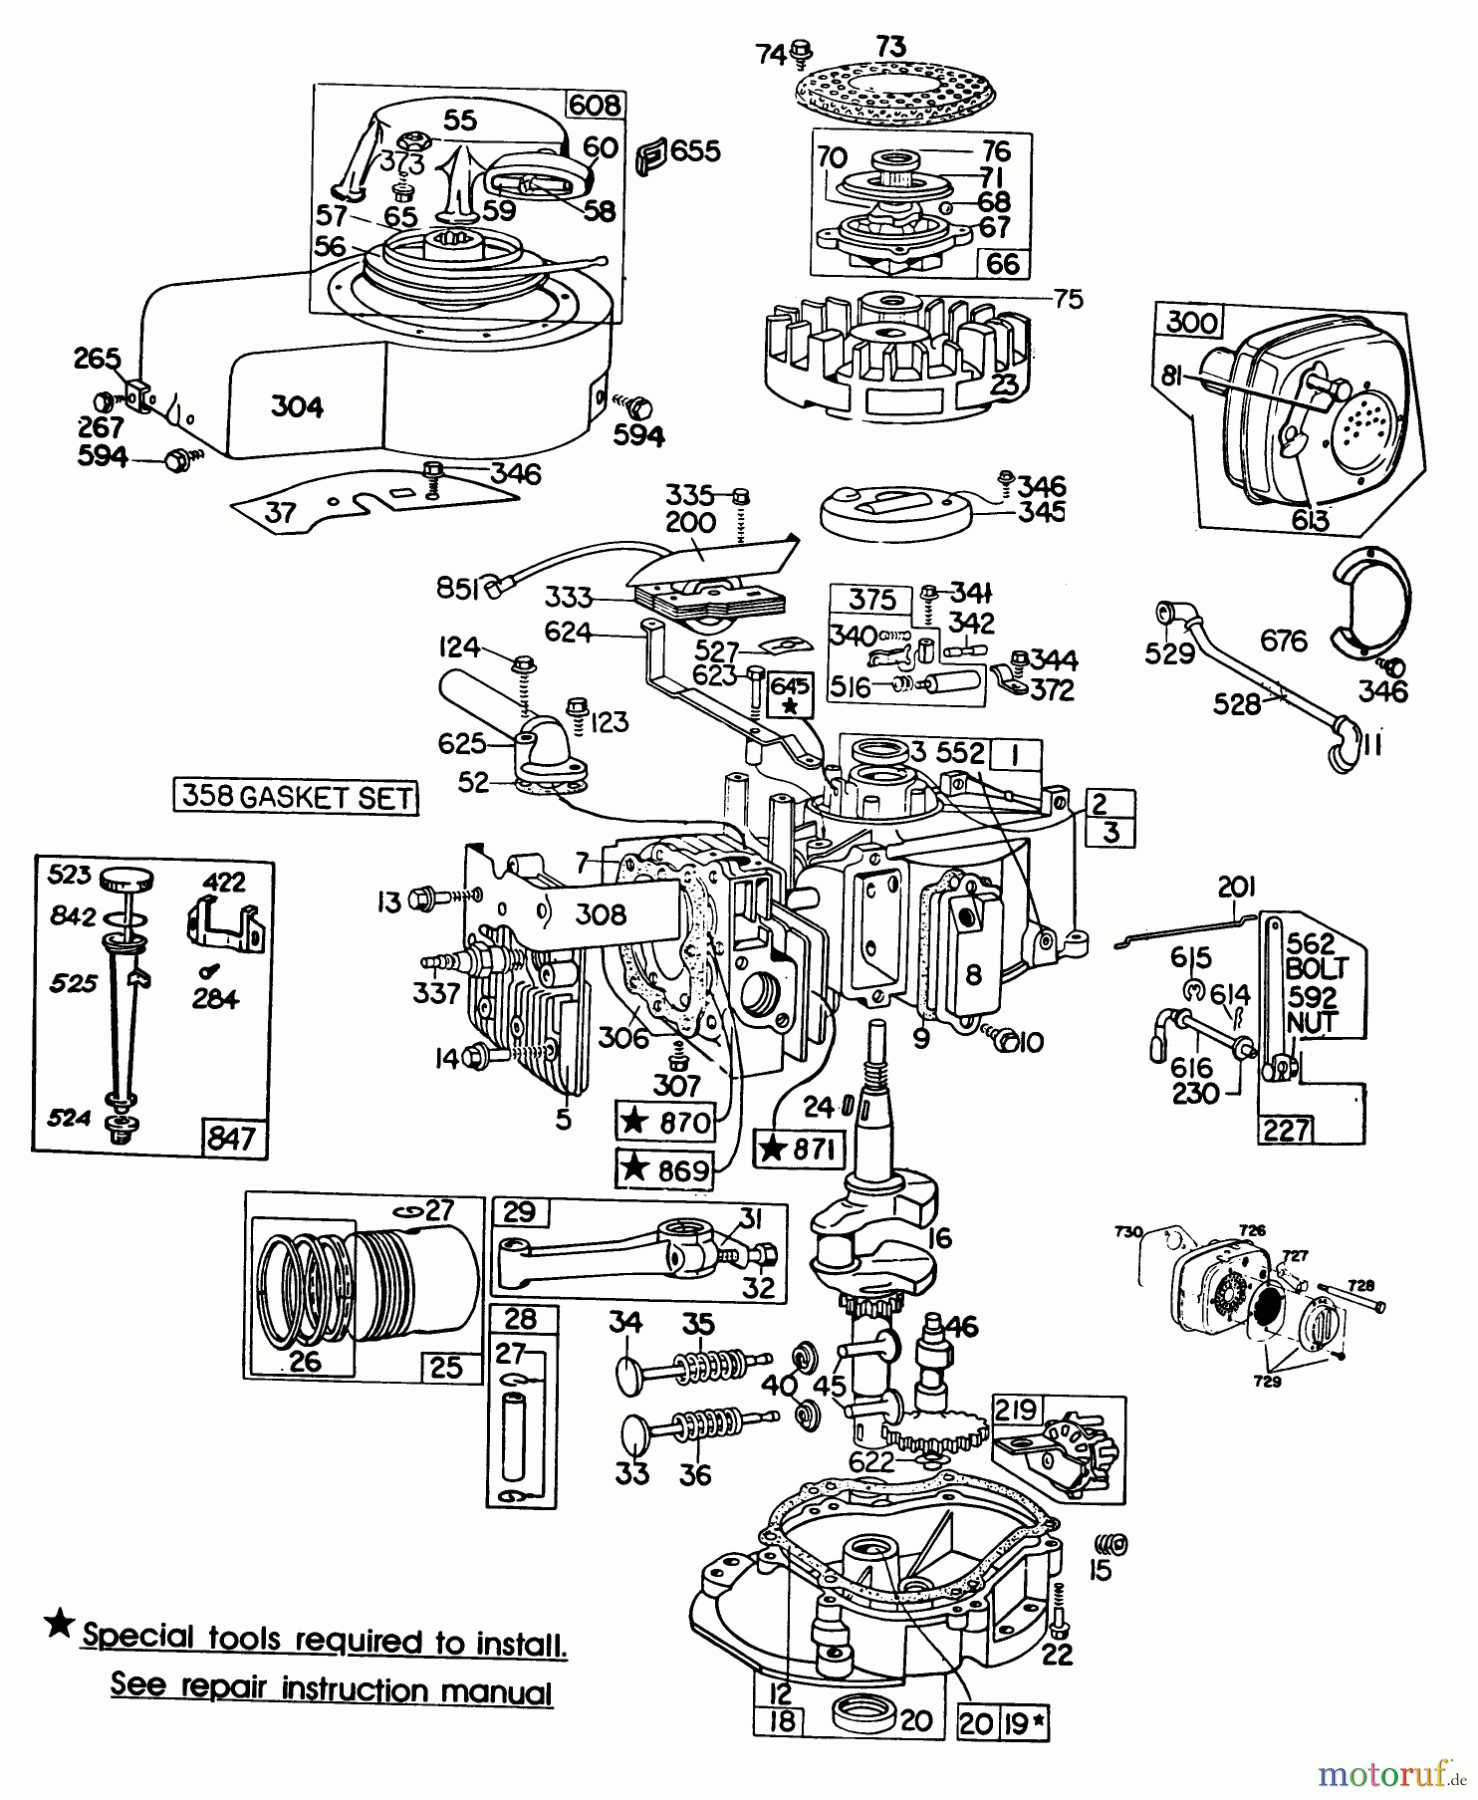  Toro Neu Mowers, Walk-Behind Seite 2 23158 - Toro Lawnmower, 1982 (2000001-2999999) ENGINE BRIGGS & STRATTON MODEL 130902-0543-01 #1